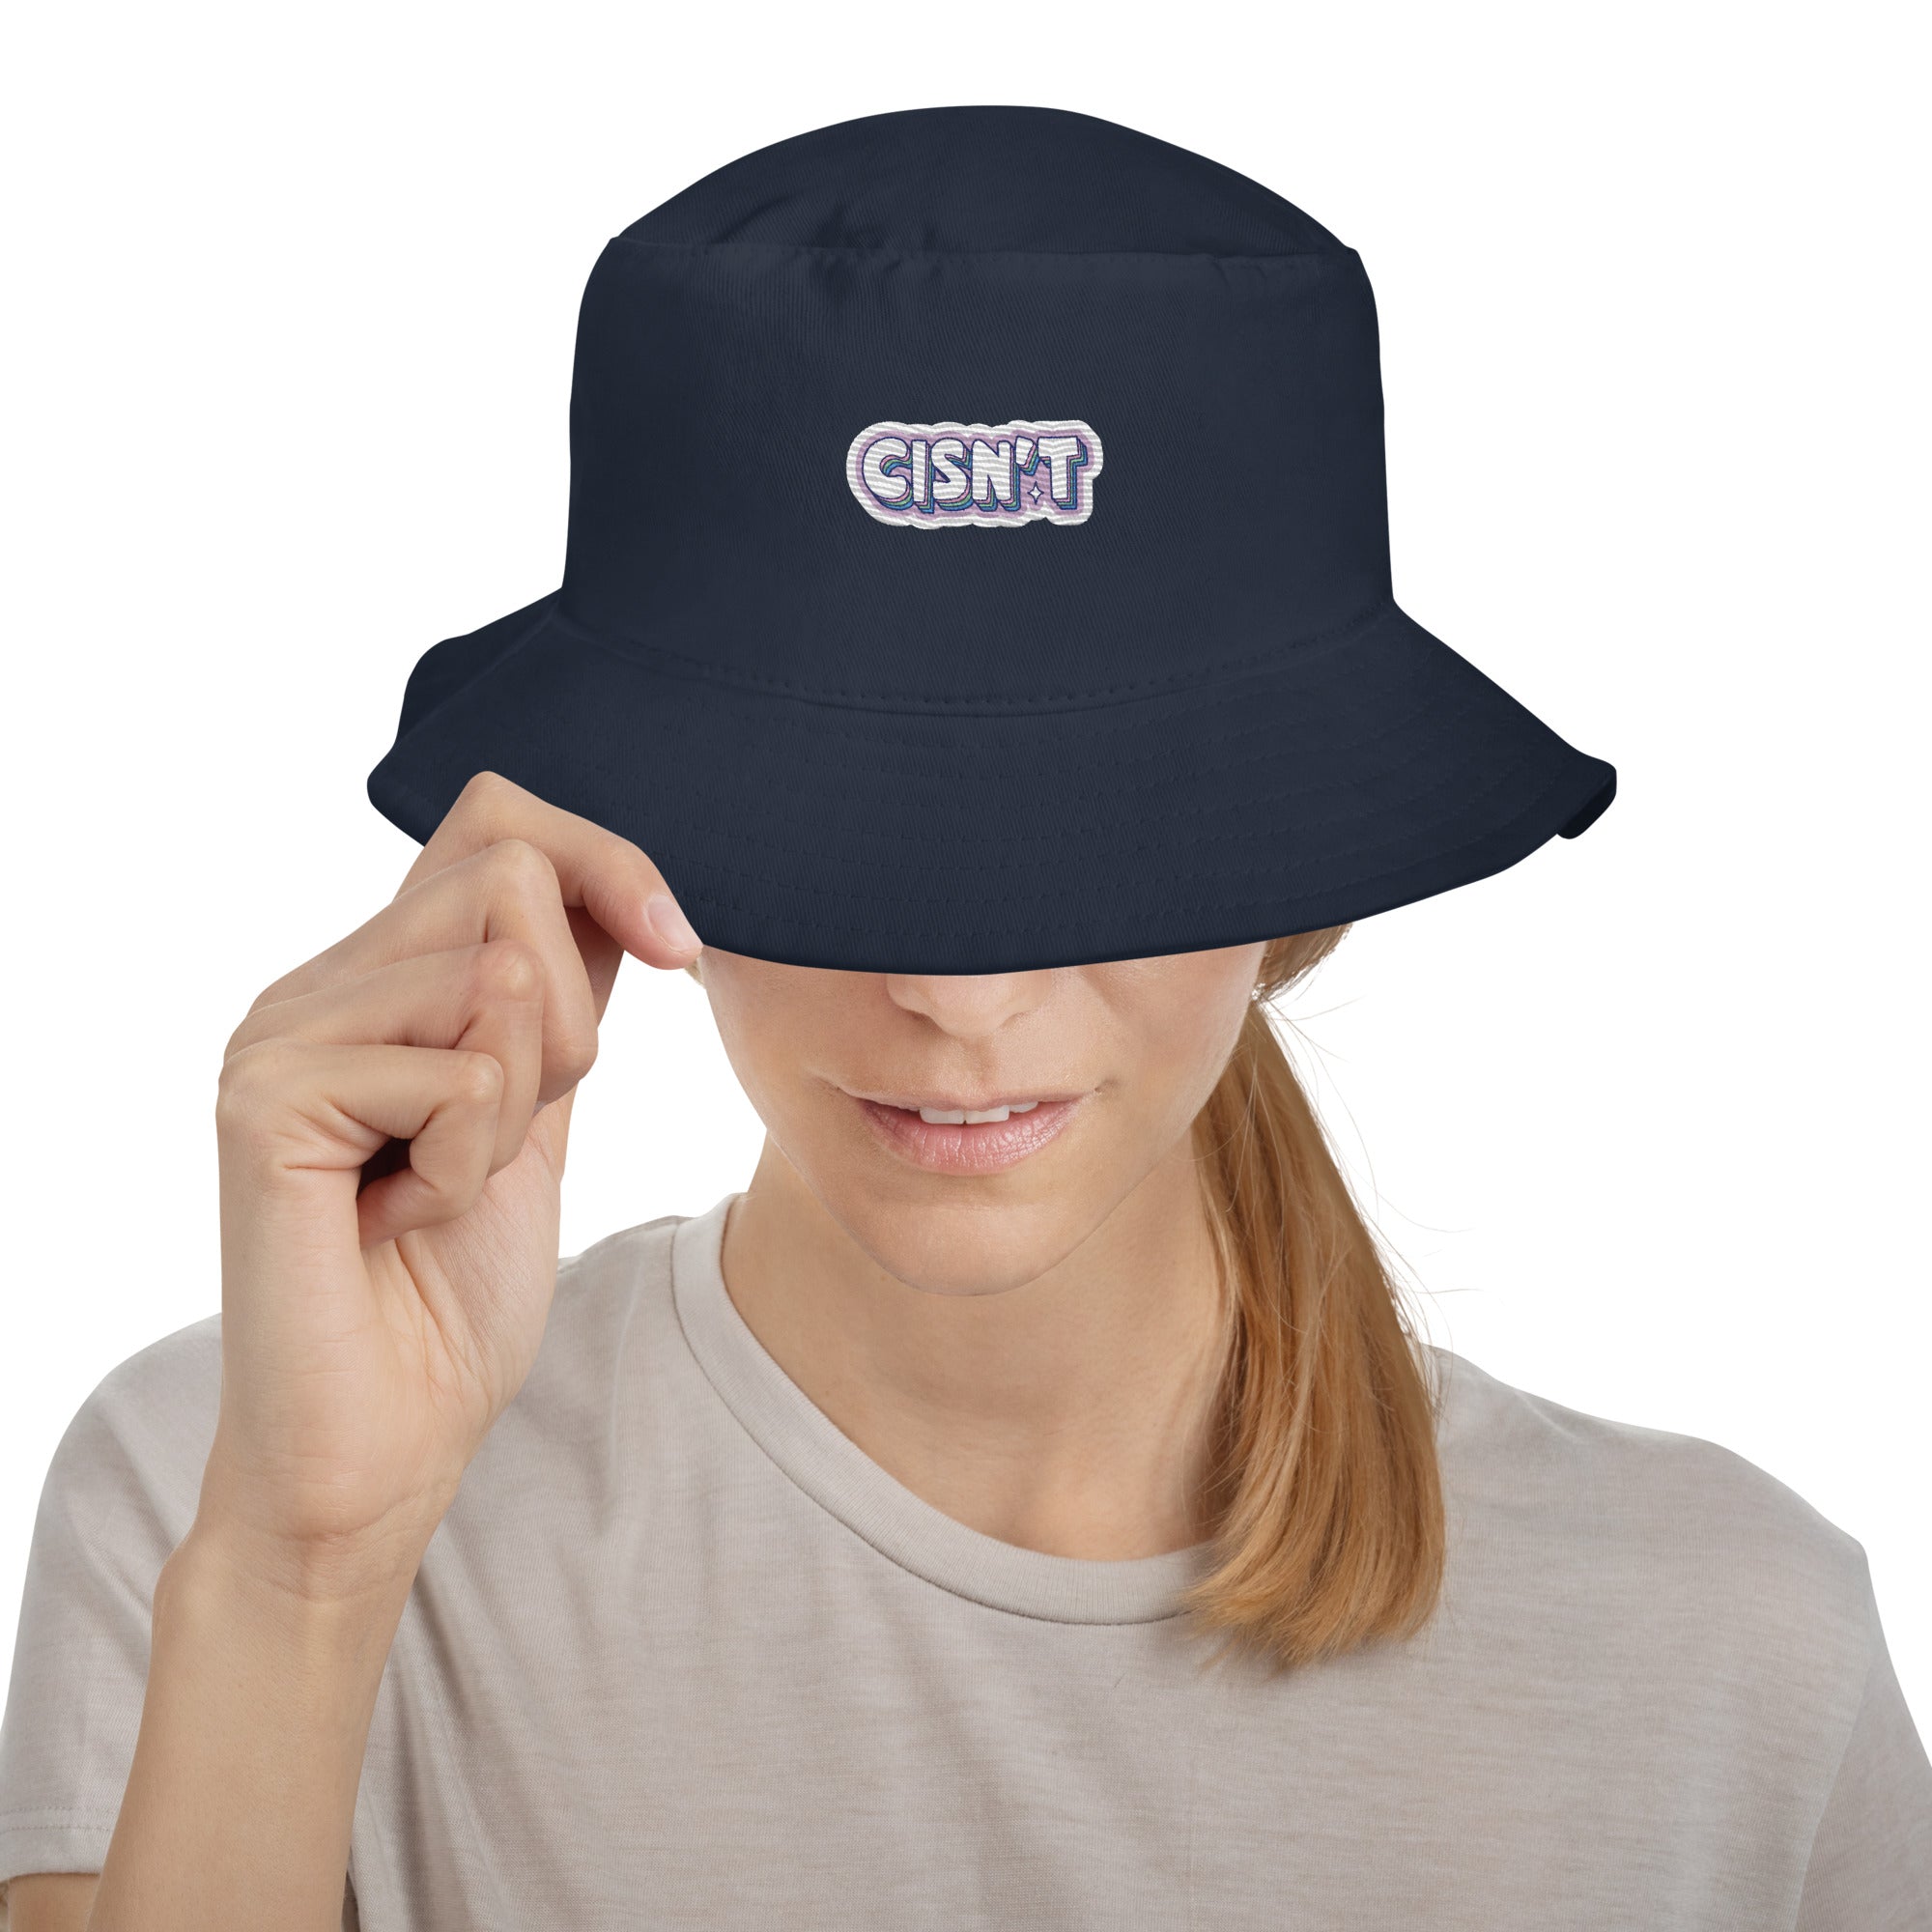 CISN'T Premium Embriodered Bucket Hat